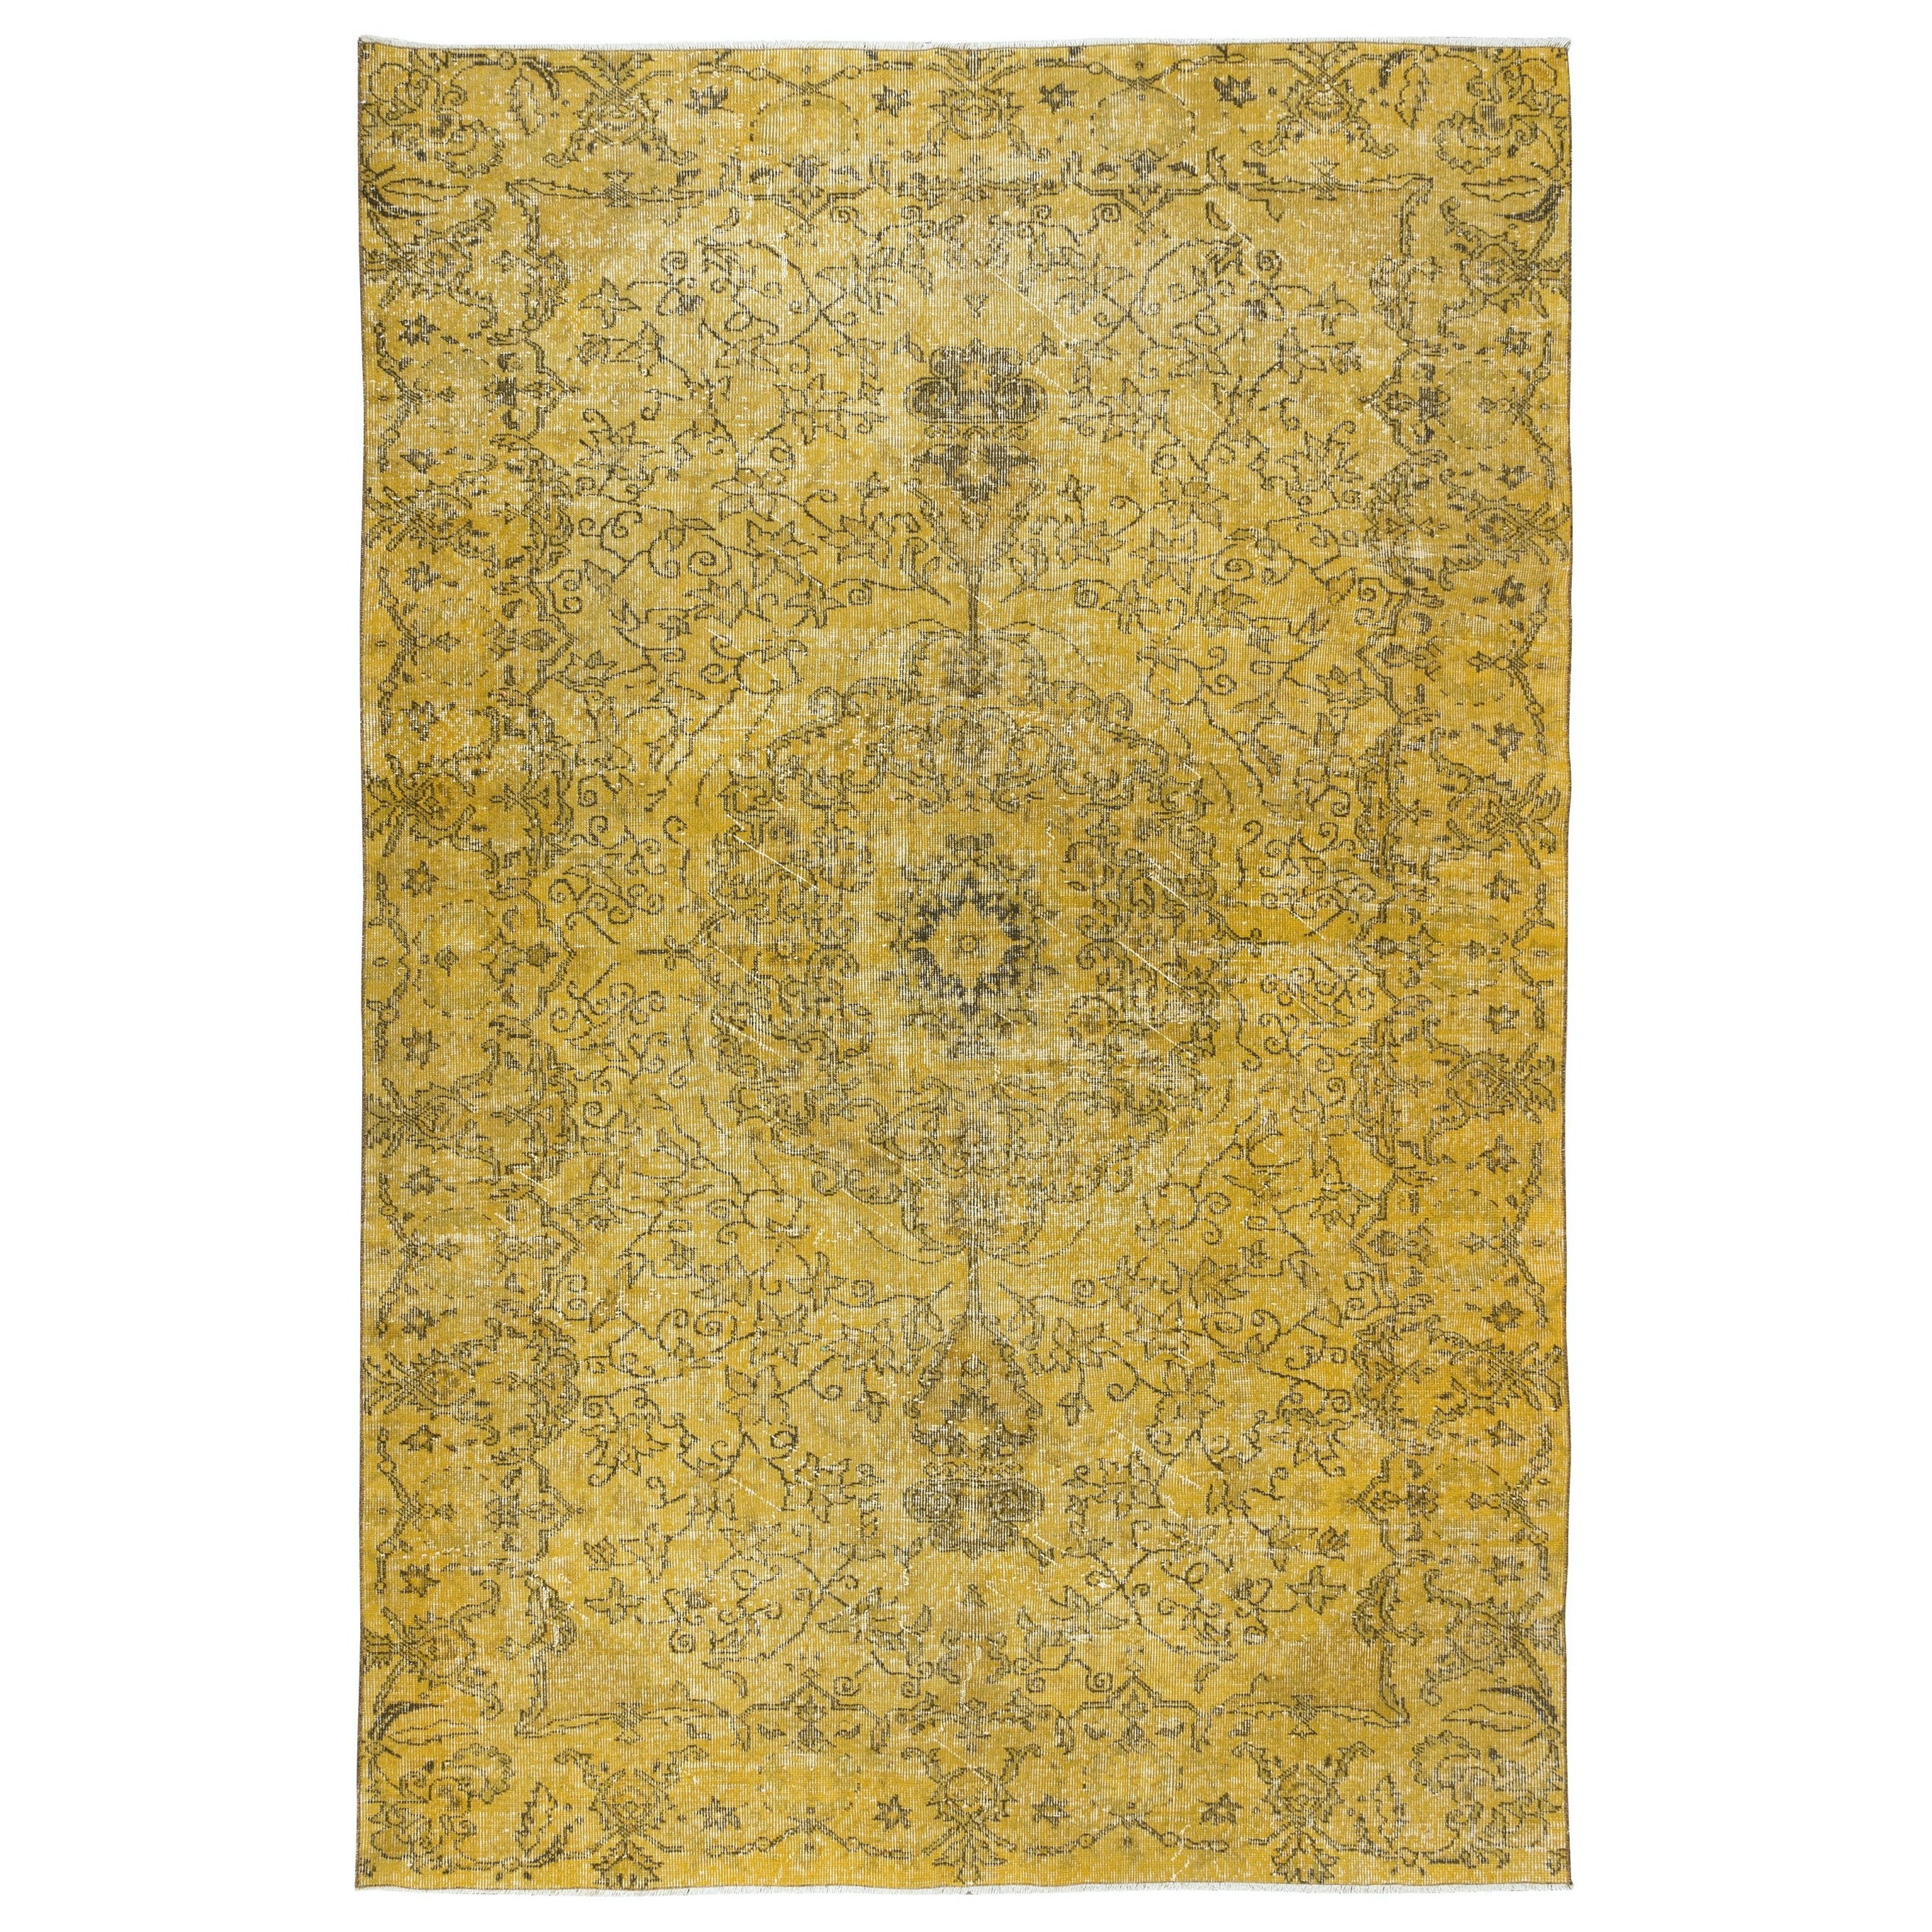 6.4x9.4 Ft Handgefertigter Türkischer Teppich in Gelb, Ideal für Contemporary Interieurs